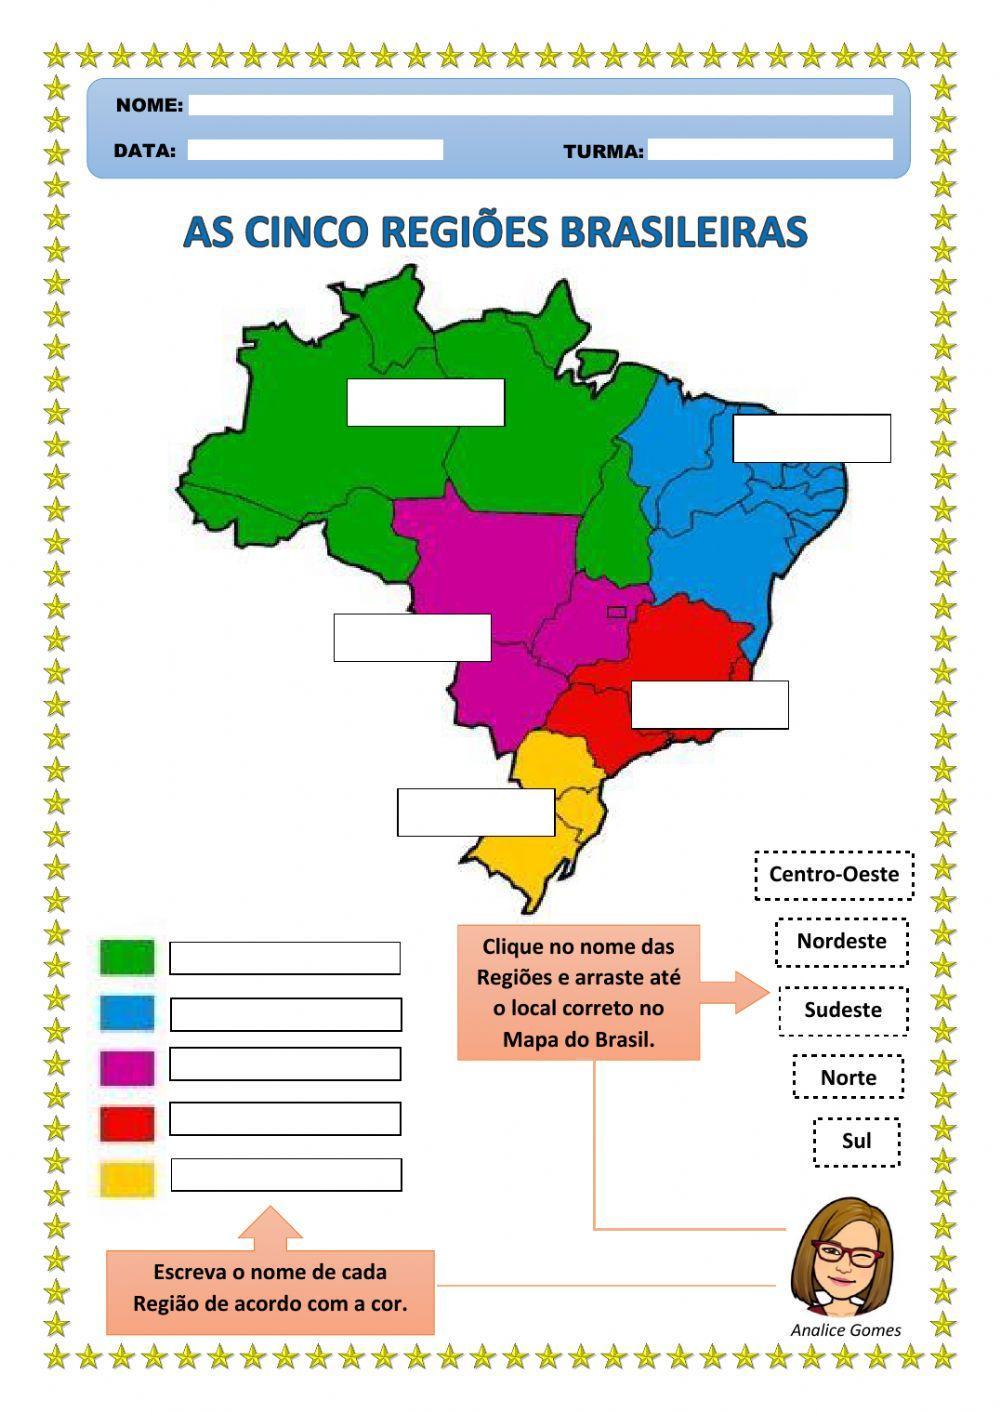 As Cinco Regiões Brasileiras